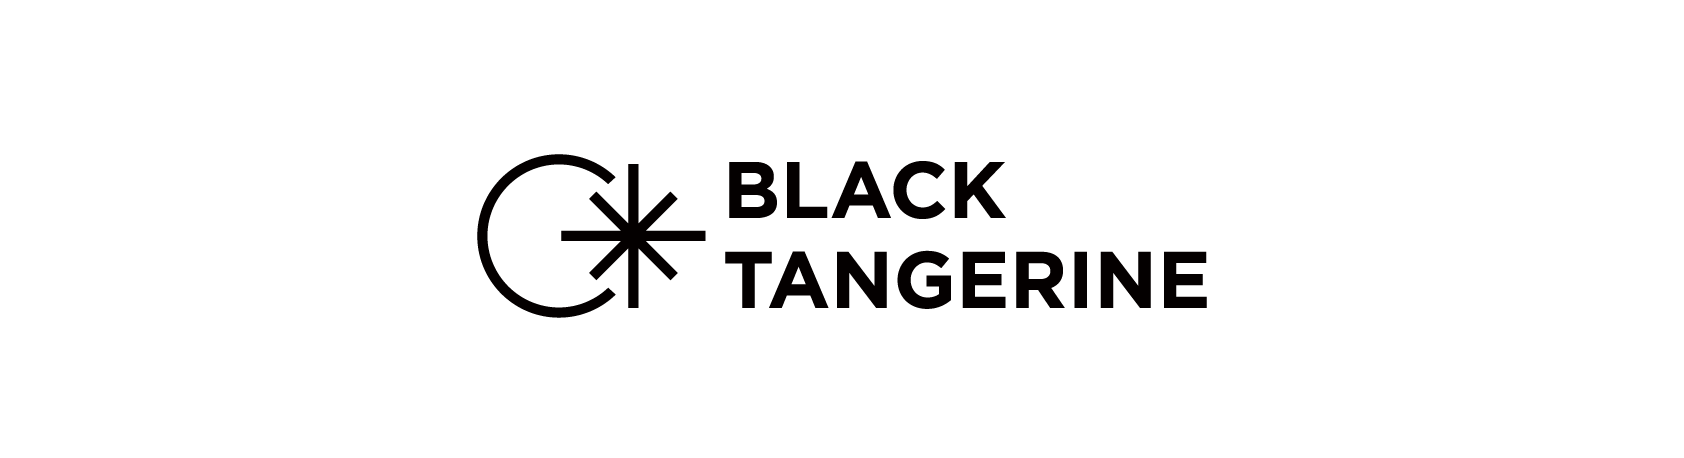 블랙탠저린 / BlackTangerine Logo